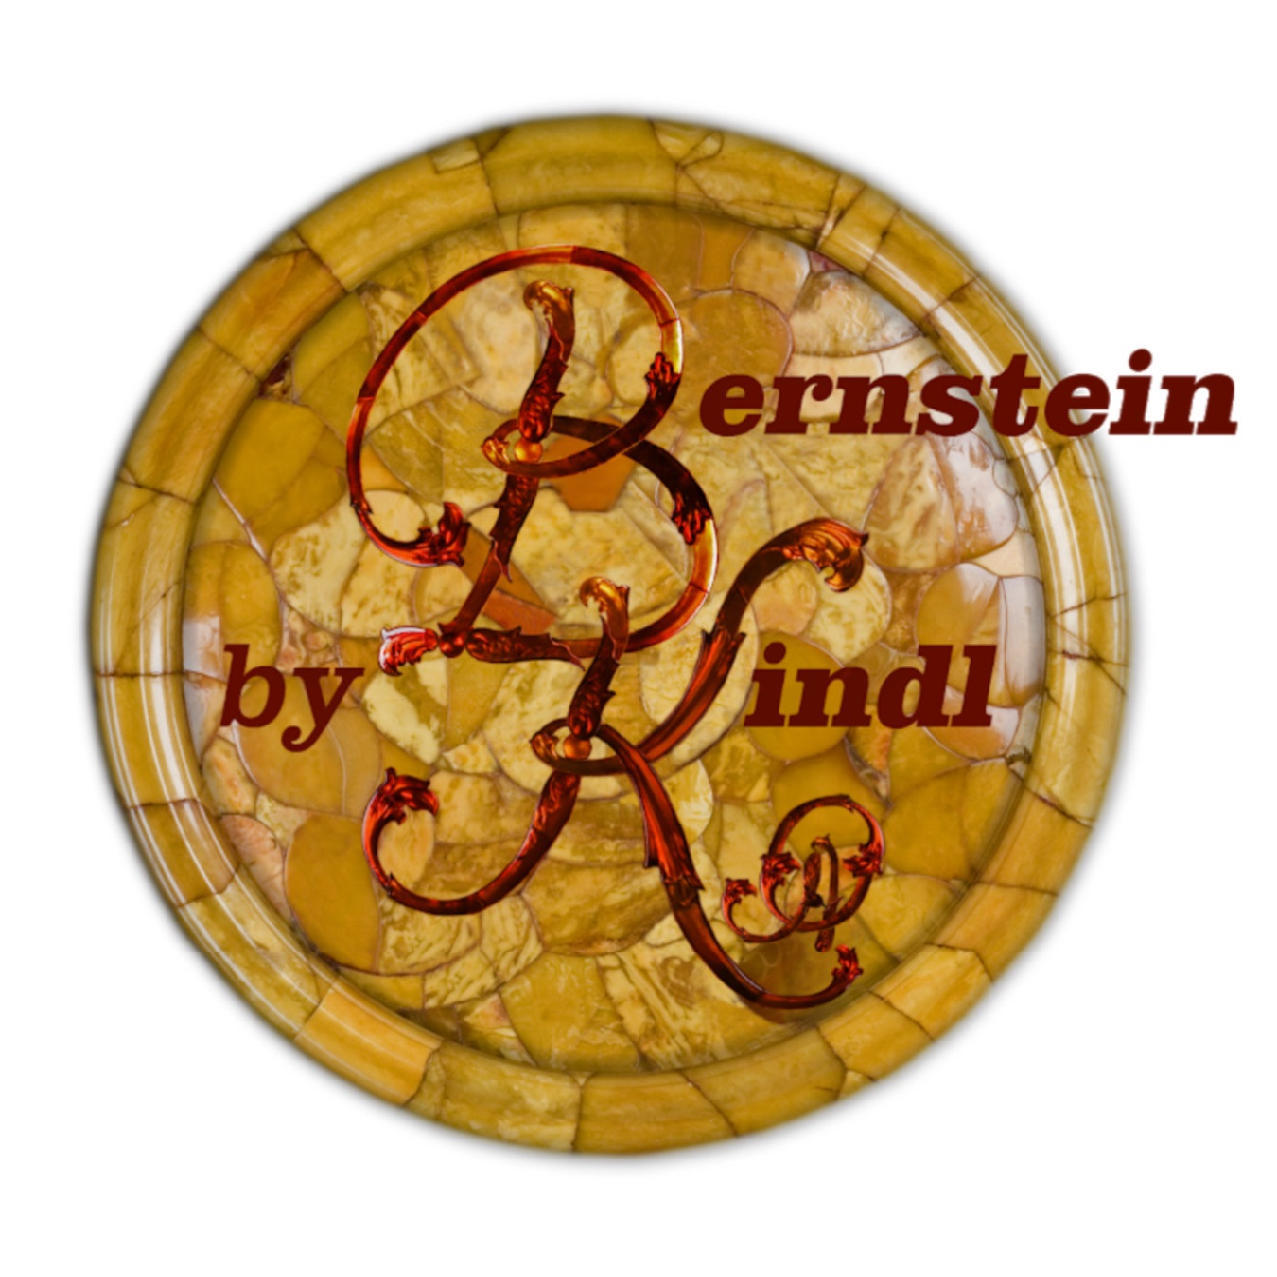 Bernstein by Kindl